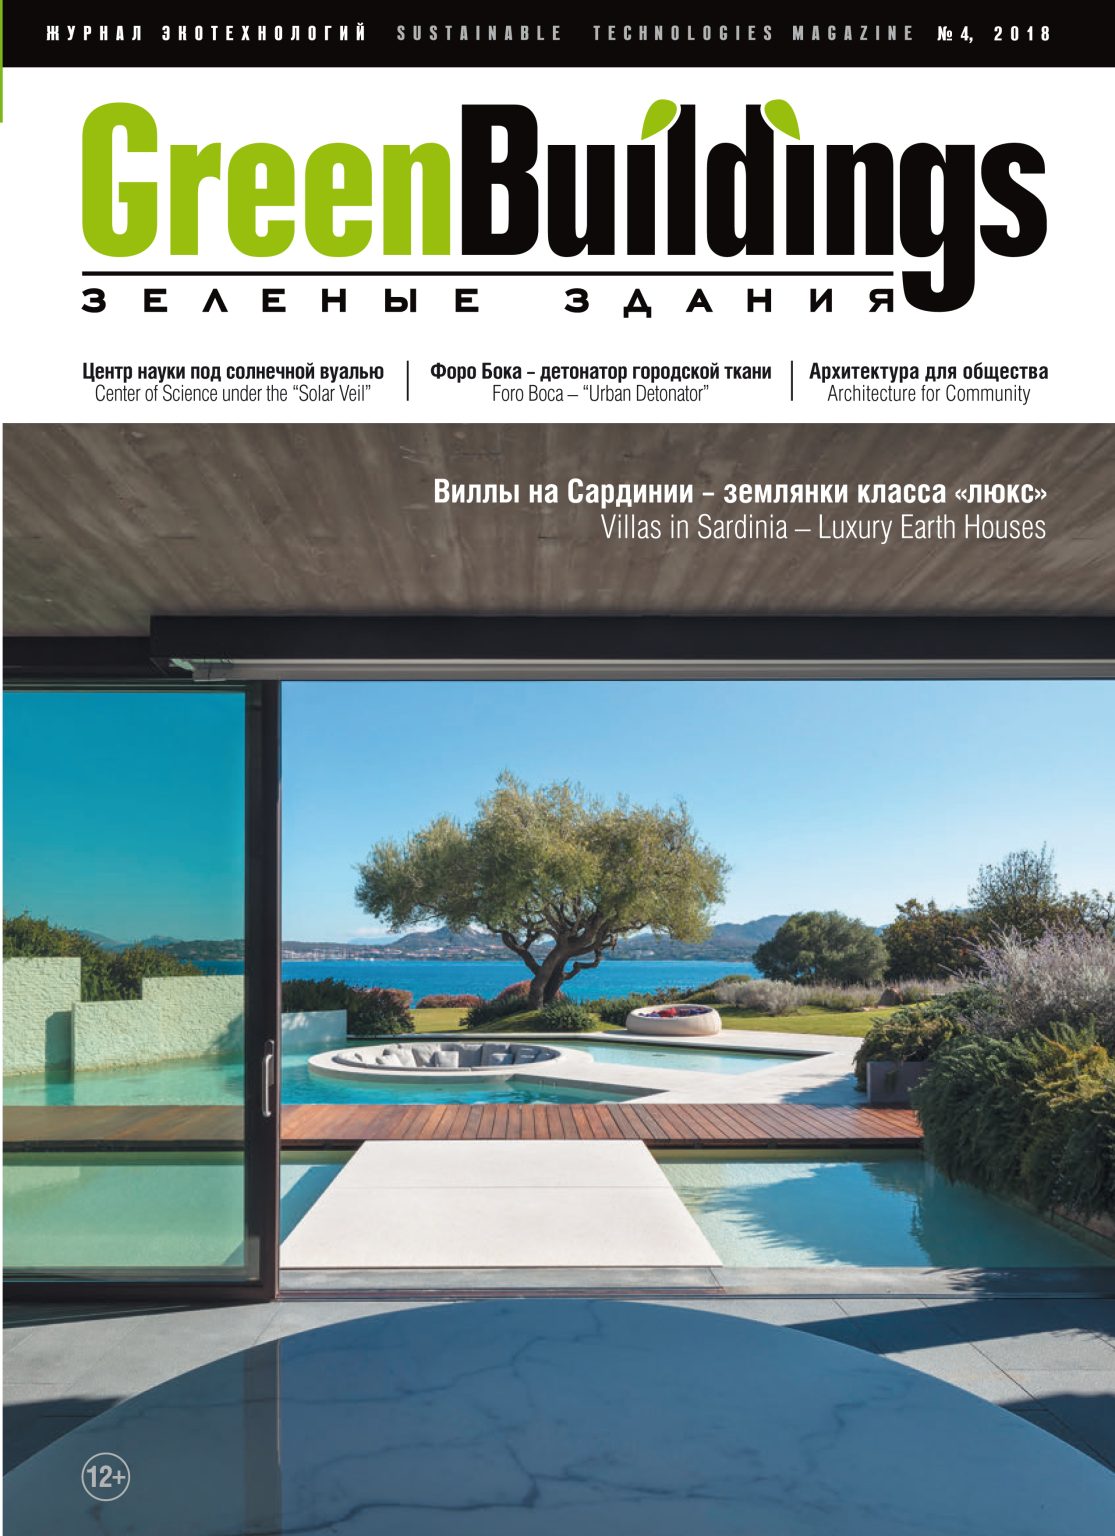 Green Buildings, Villas in Sardinia – Luxury Earth Houses